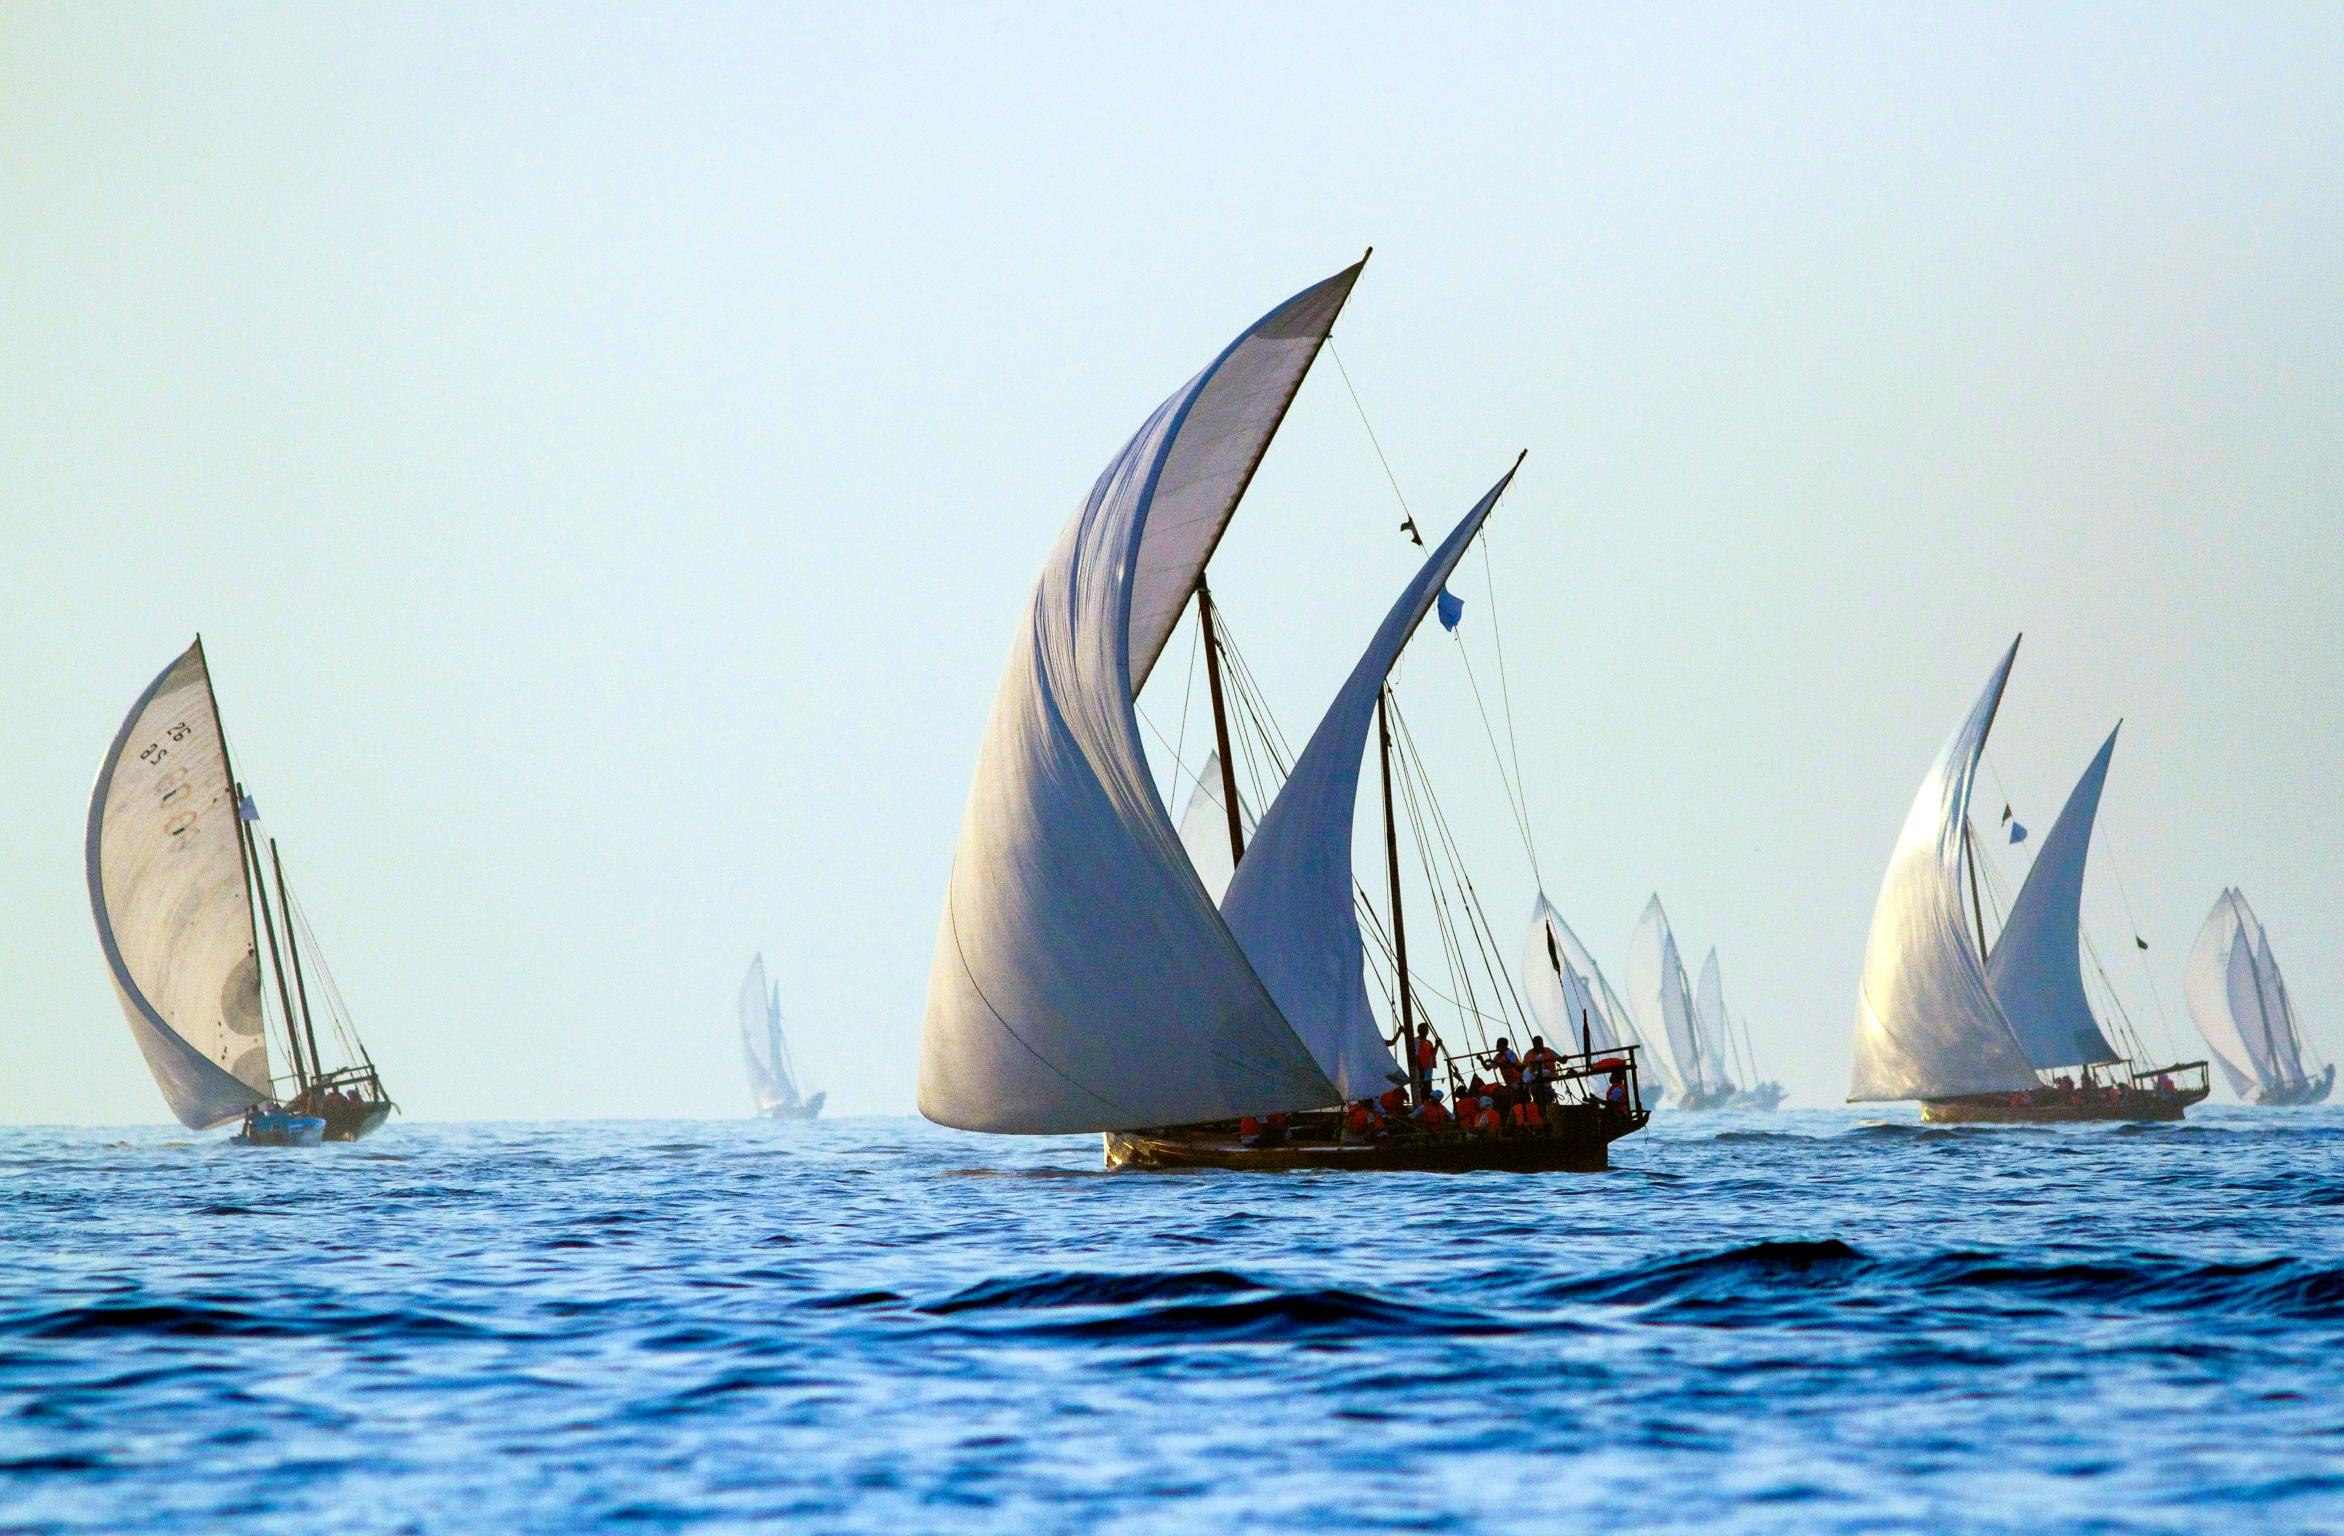 Inspiration
Die Dhow-Möbel sind eine Anspielung auf die geblähten Segel der traditionellen omanischen Boote, die ein wichtiger Teil der maritimen Geschichte des Landes sind.

Handwerk
Bethan hat die Bewegung der Segel in einem handgezeichneten